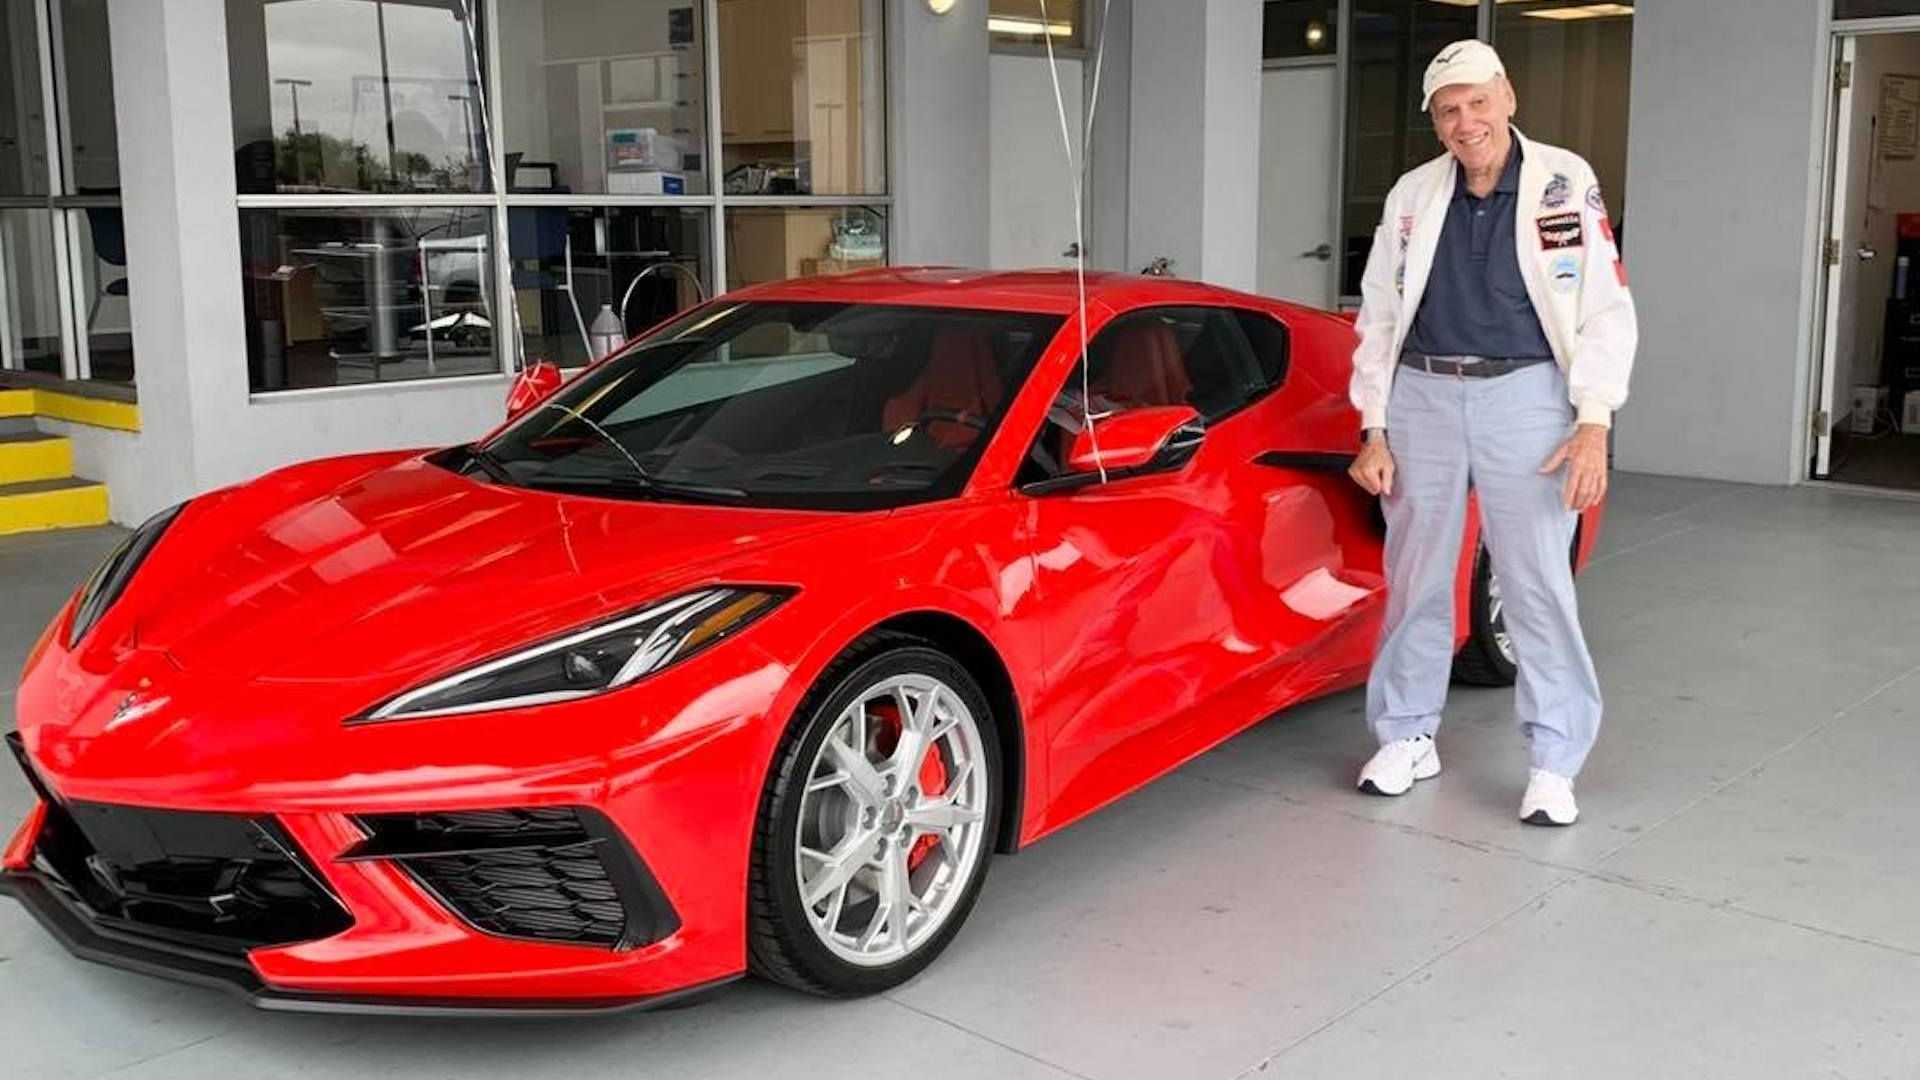 Cụ ông 90 tuổi tự thưởng sinh nhật bằng Chevrolet Corvette mới toanh - Ảnh 1.